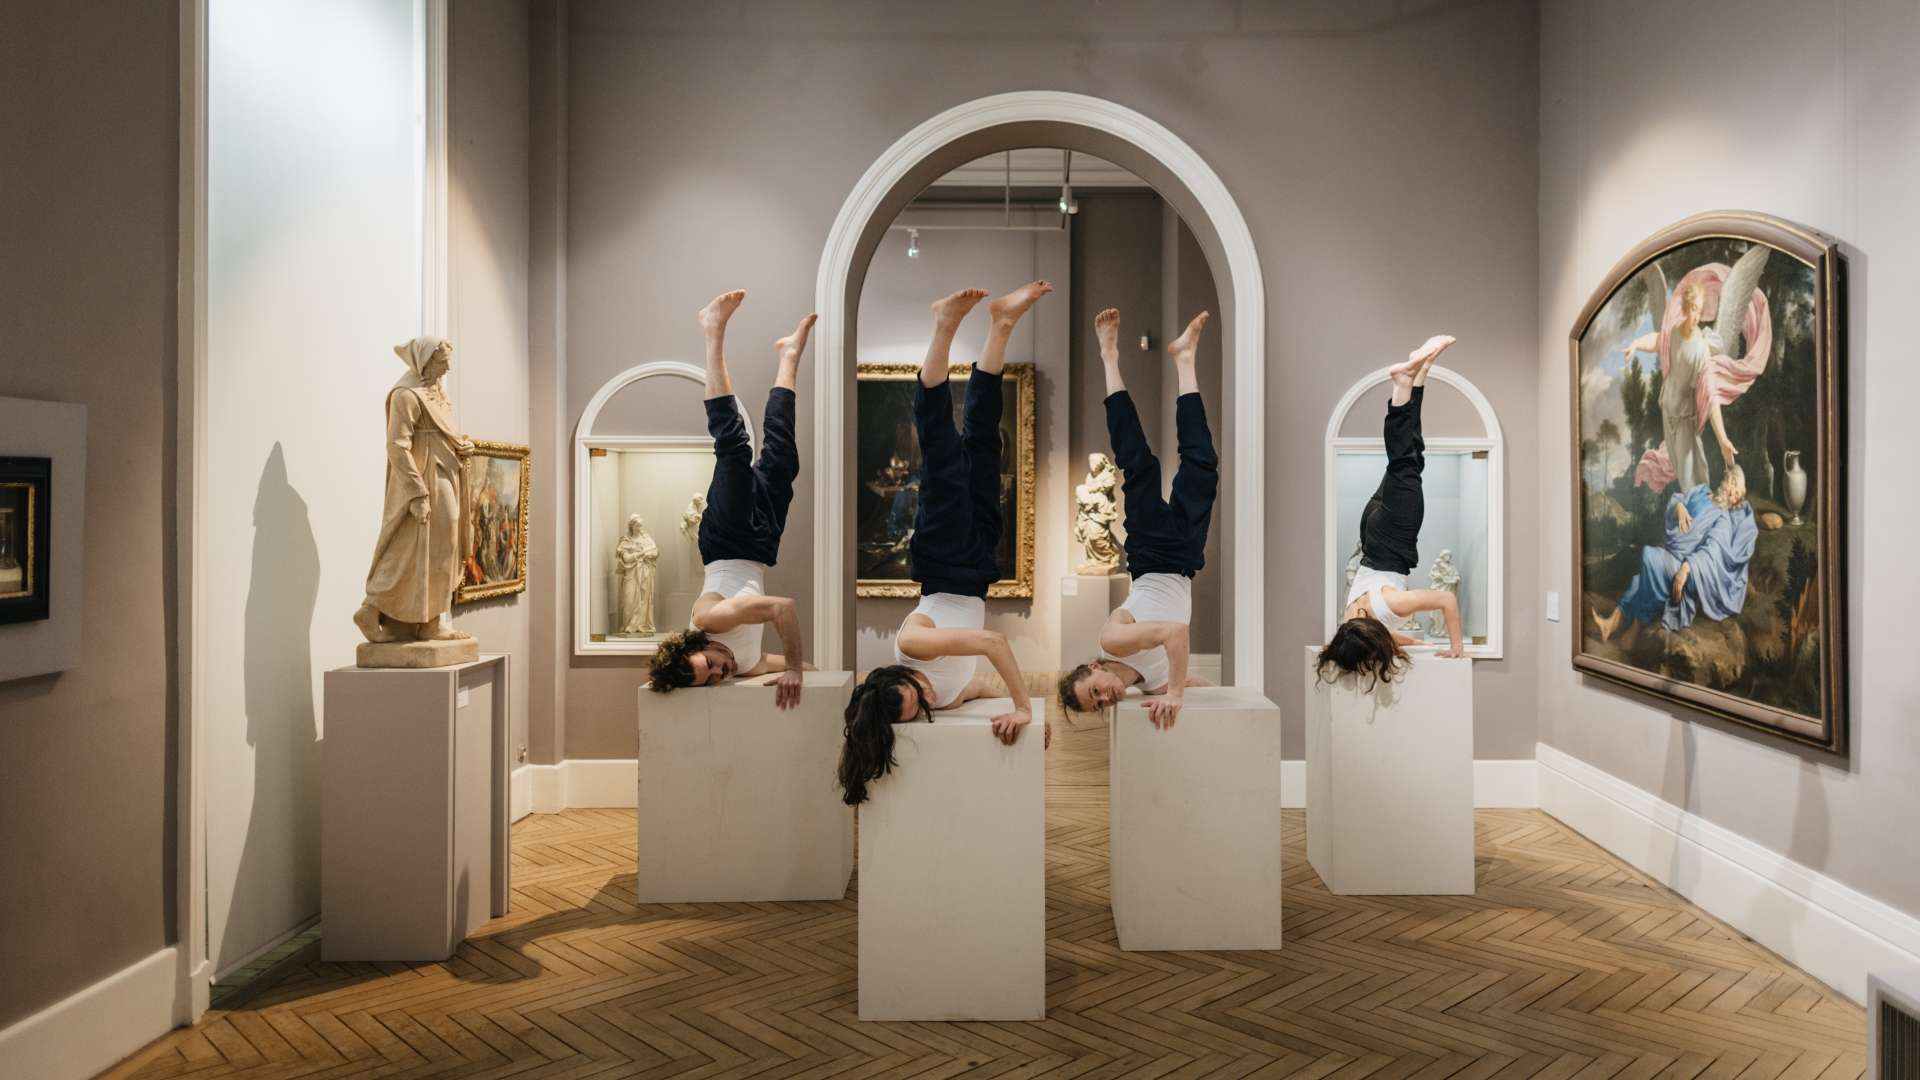 Les artistes sont en équilibre sur des podiums dans un musée